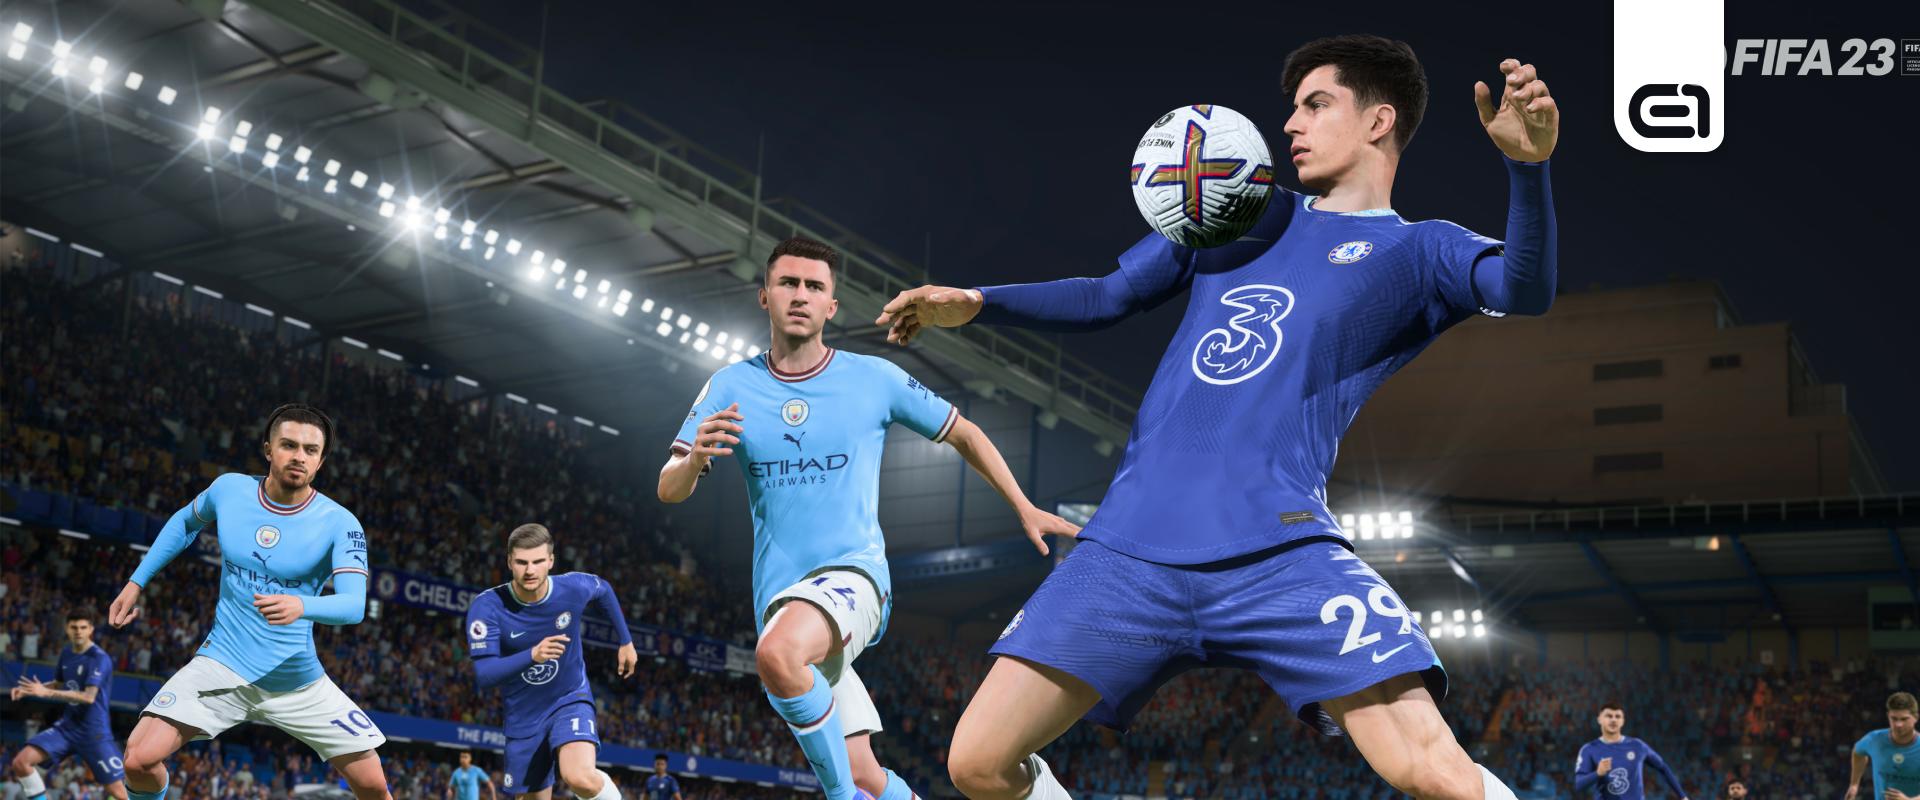 FIFA 23: Nem tudja elengedni az EA a világbajnokságot, ismét rossz lapokat raktak a csomagokba